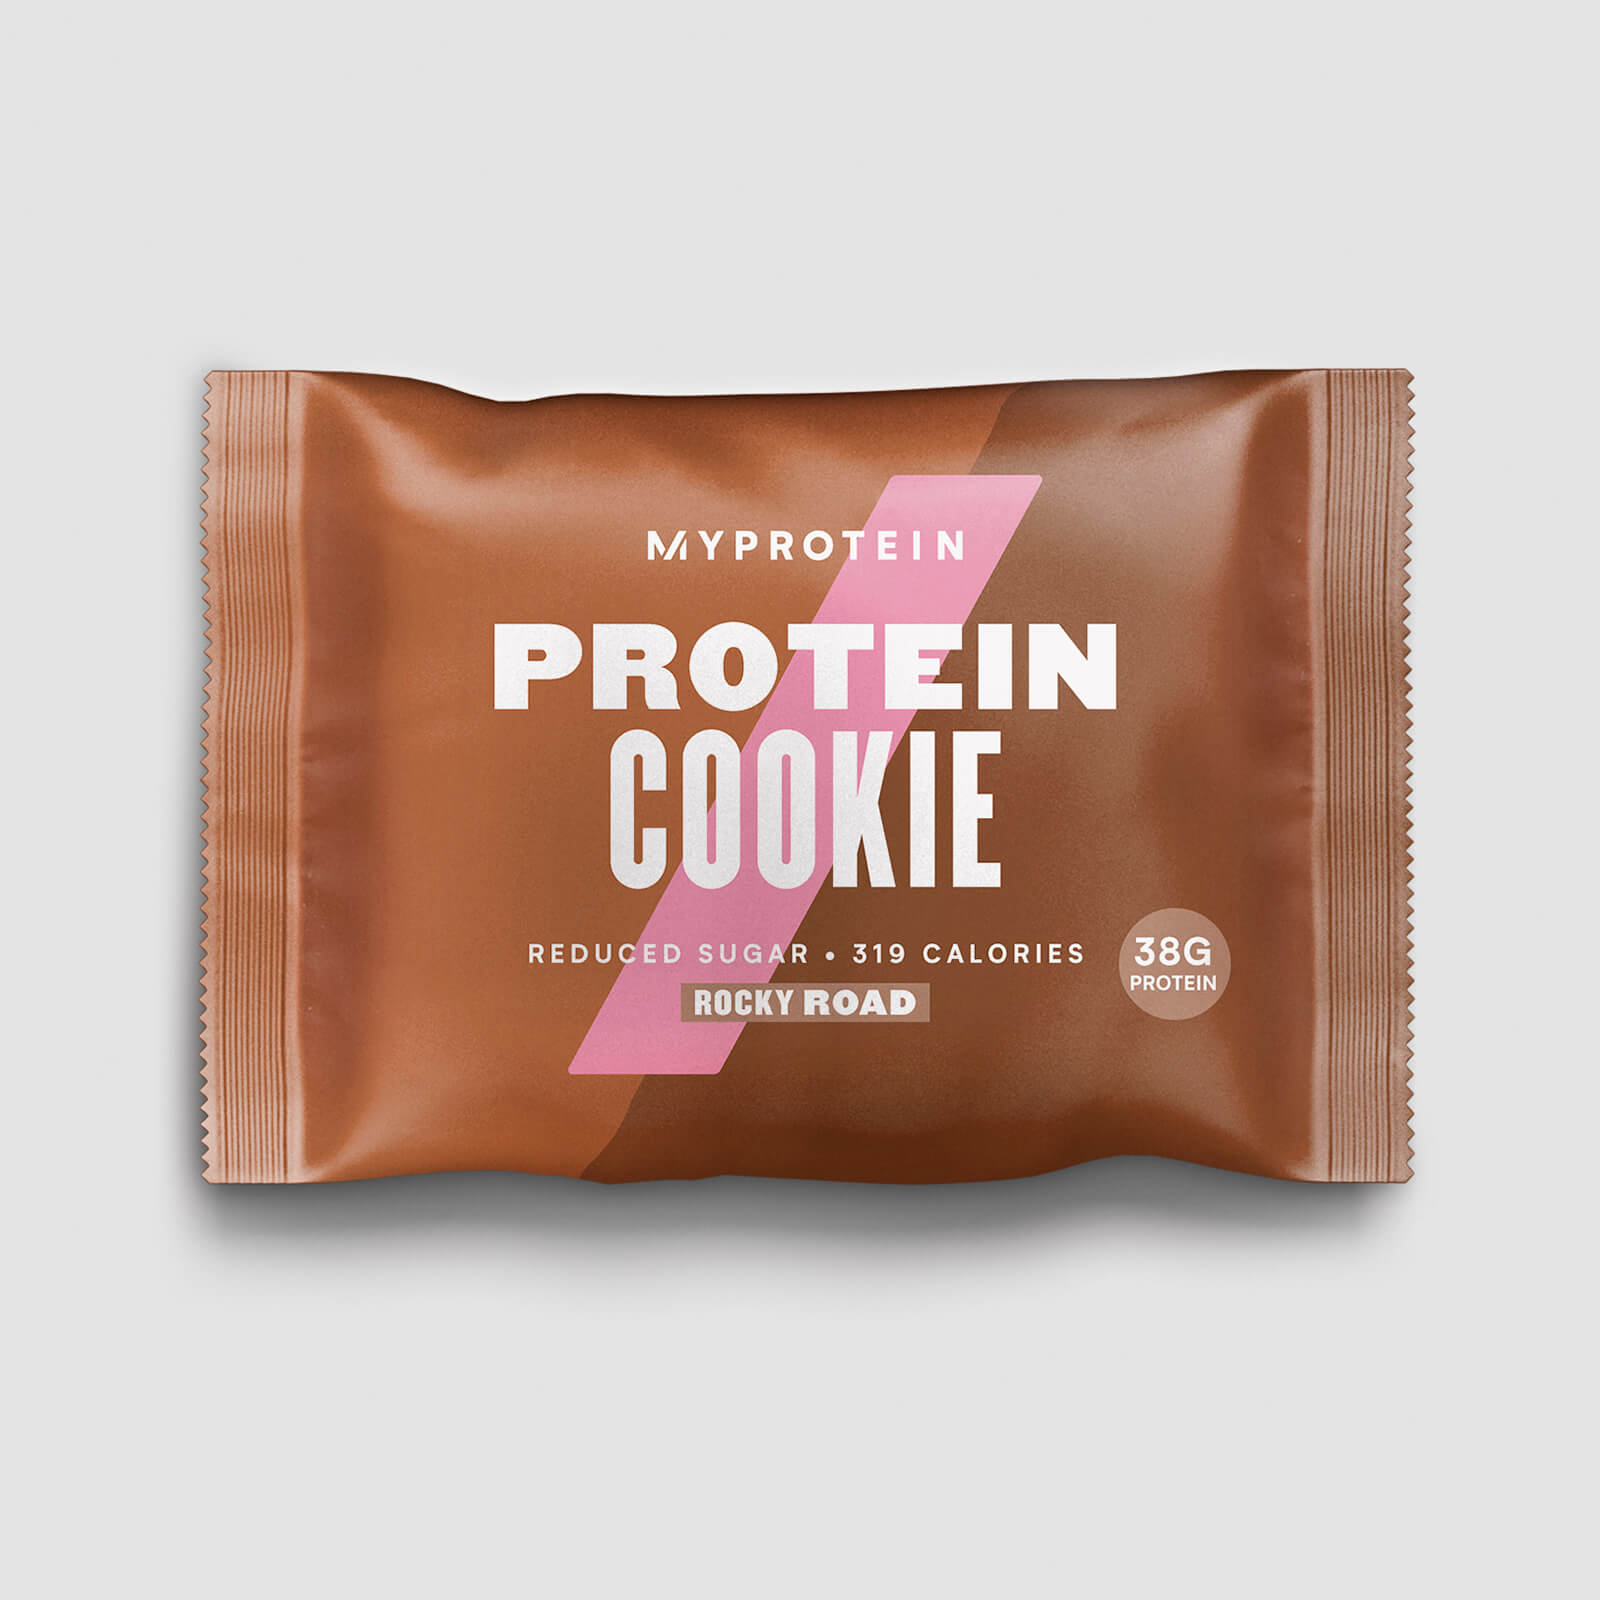 Myprotein Protein Cookie - 12 x 75g - New - Rocky Road